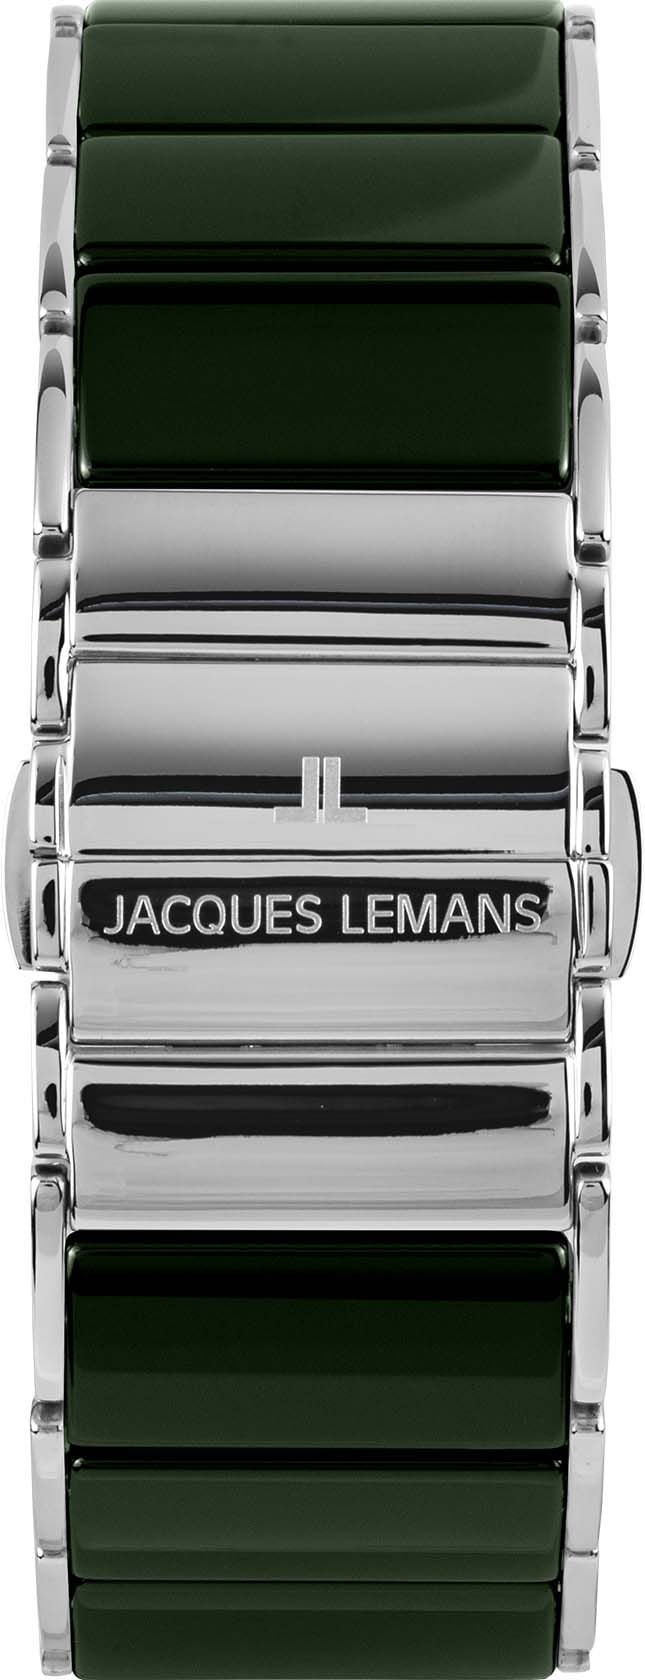 Jacques Lemans Chronograph »Dublin, 1-1941G« online kaufen | BAUR